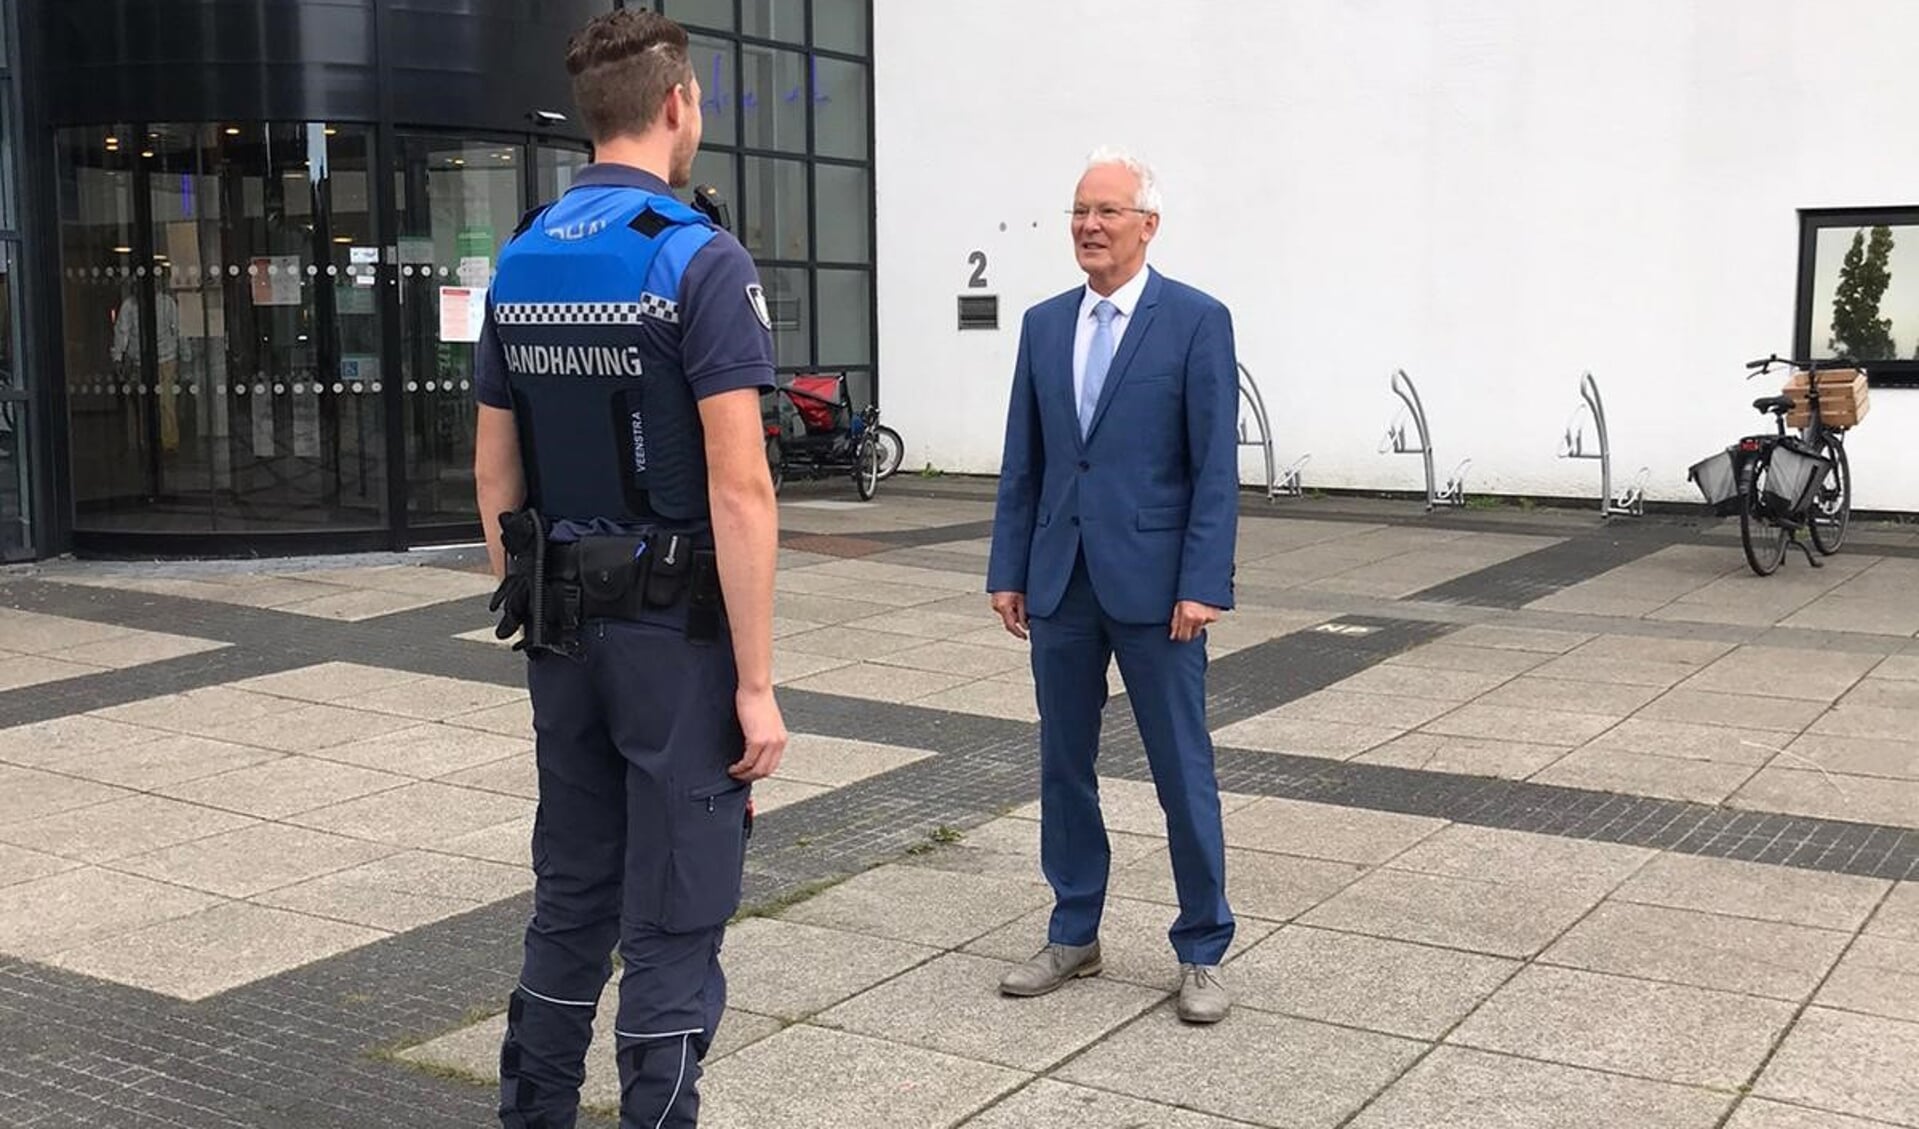 Burgemeester Jan Rijpstra met op de voorgrond een buitengewoon opsporingsambtenaar (boa). Scan de foto met de ActiefPlus-app voor een filmpje waarin de burgemeester vertelt over veiligheid in Drachten.